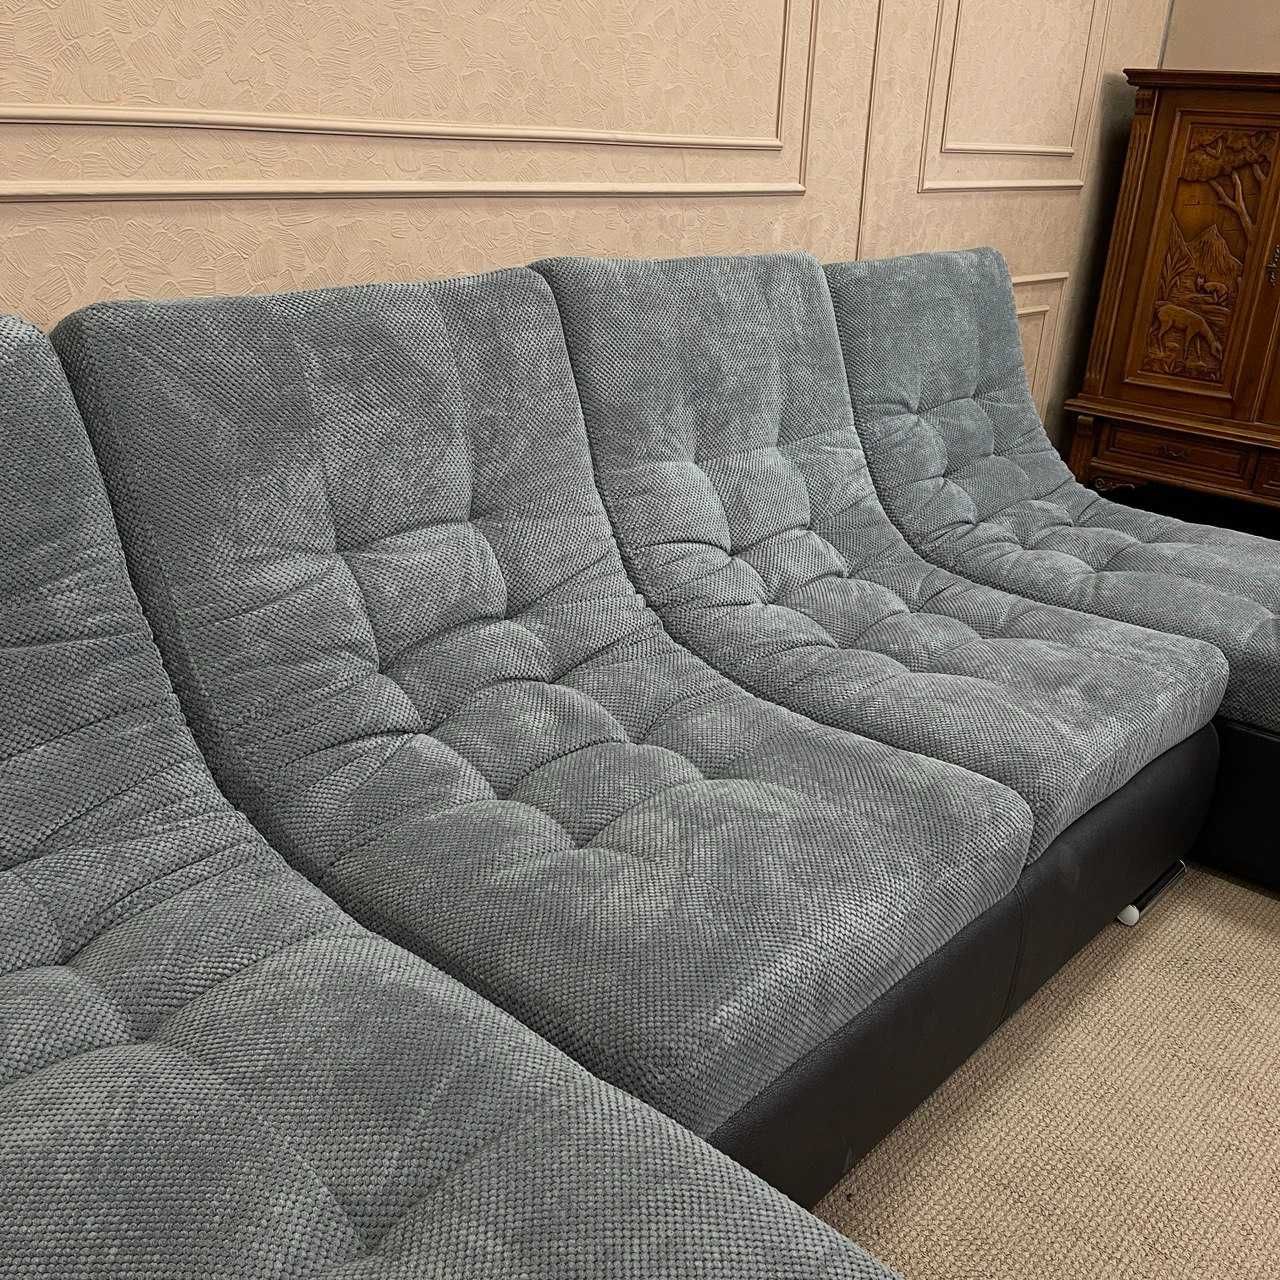 Розкладний диван з нішею п-подібної форми купити